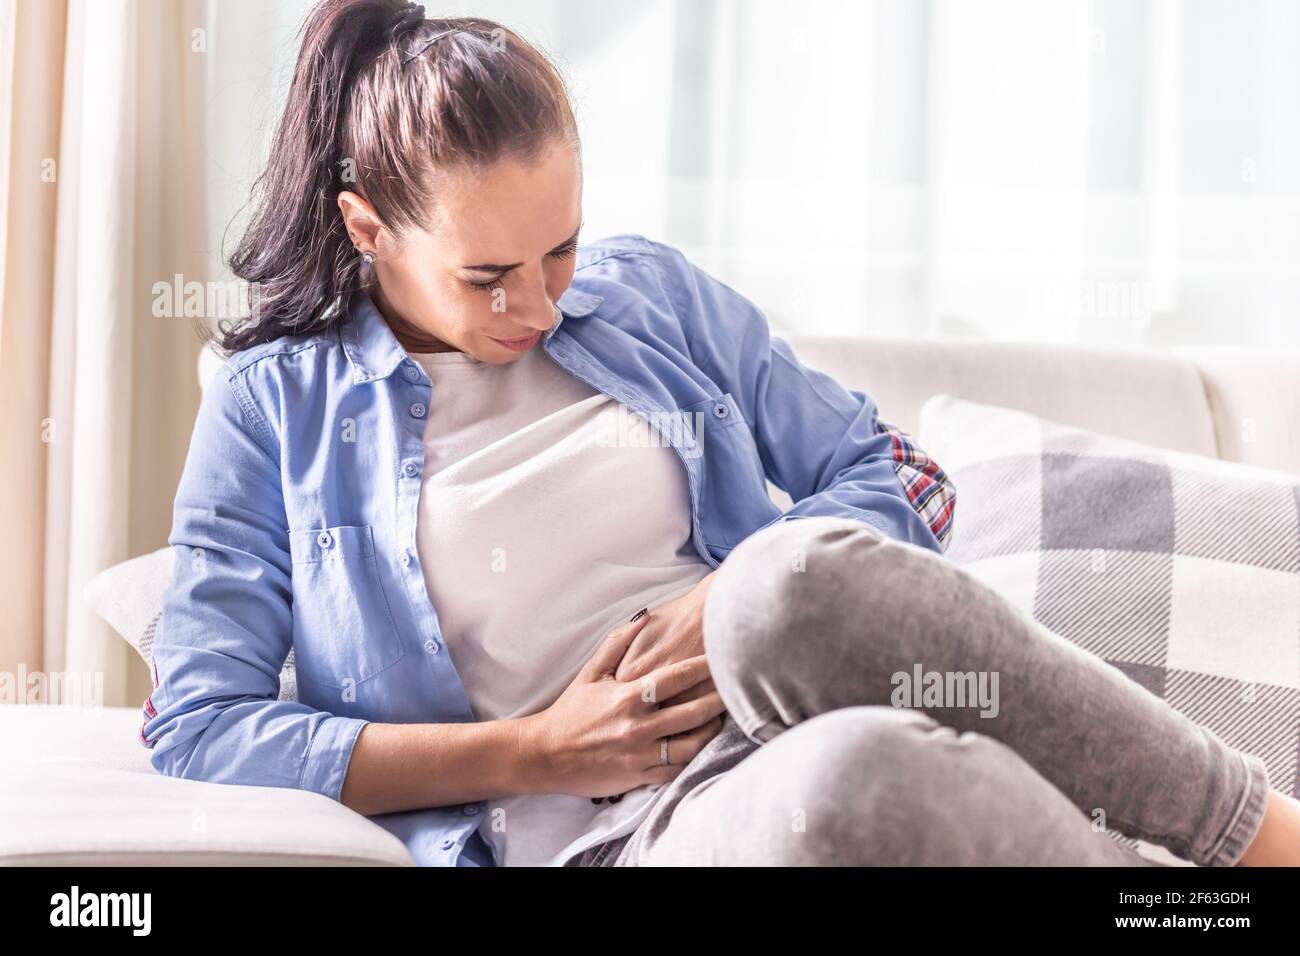 Dettaglio di una donna nel dolore di abdominals, gallbladder, ovaie, appendice, fegato o intestini che tiene il ventre con le mani. Foto Stock